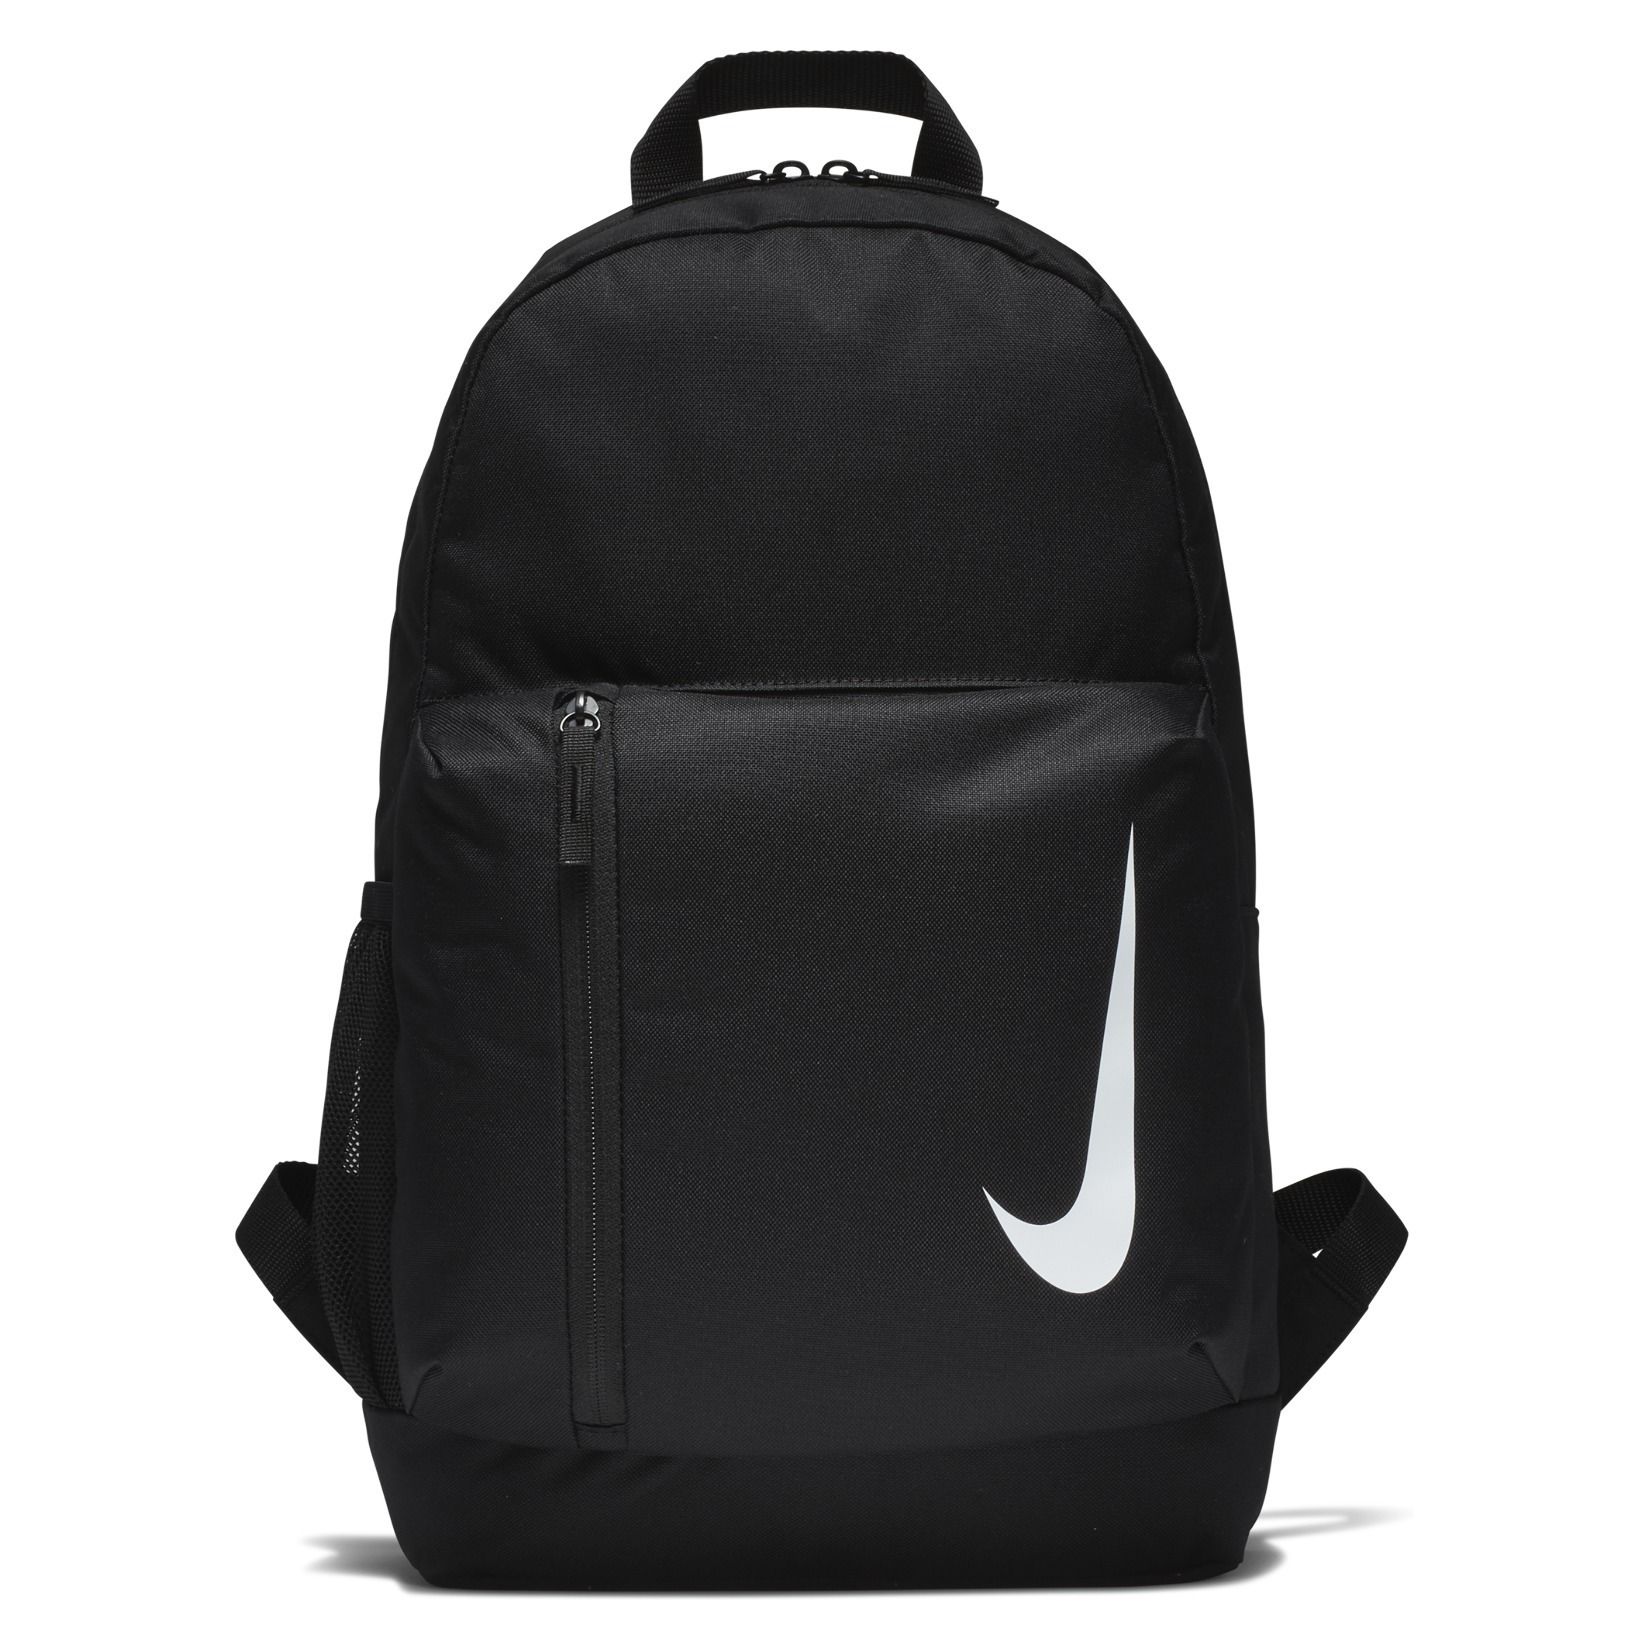 nike academy backpack black